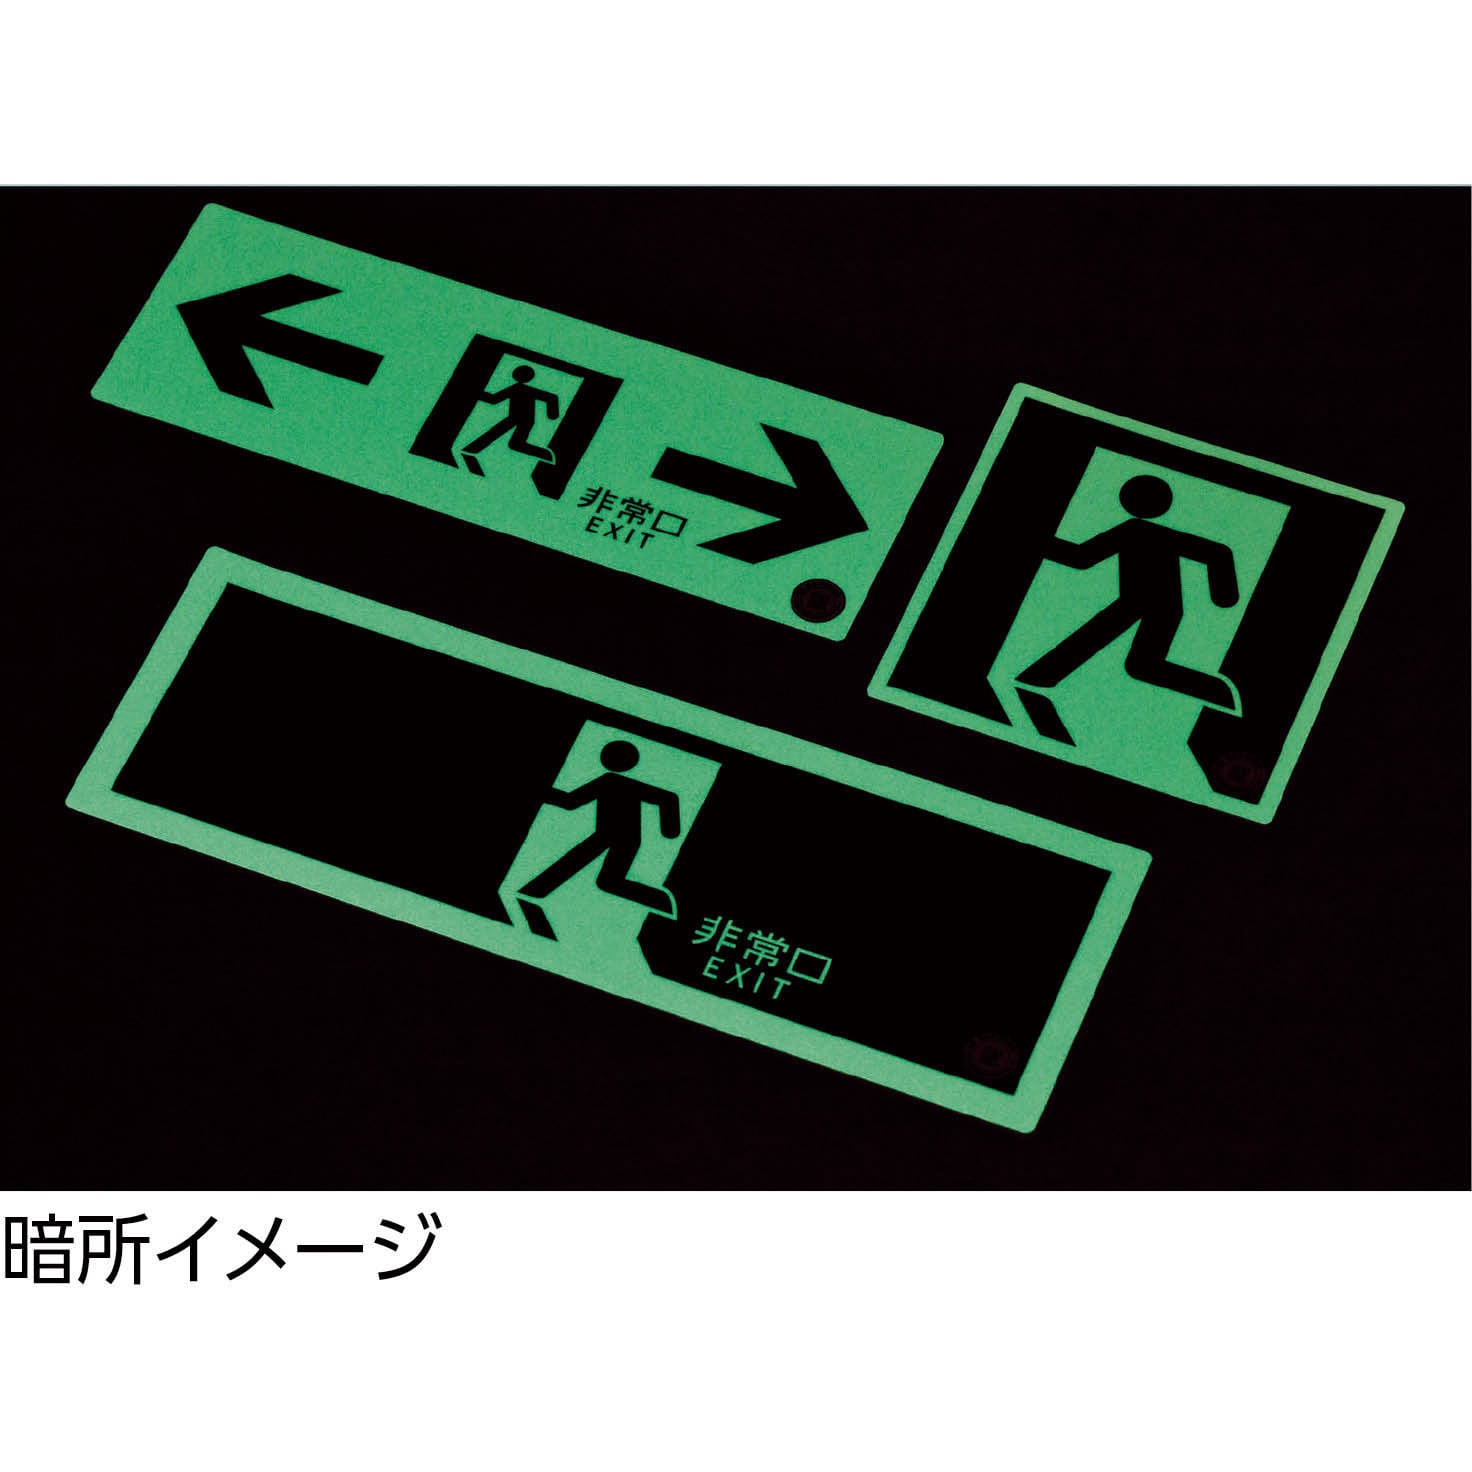 924円 大好評です 日本緑十字 中輝度蓄光式避難口標識 TSN804